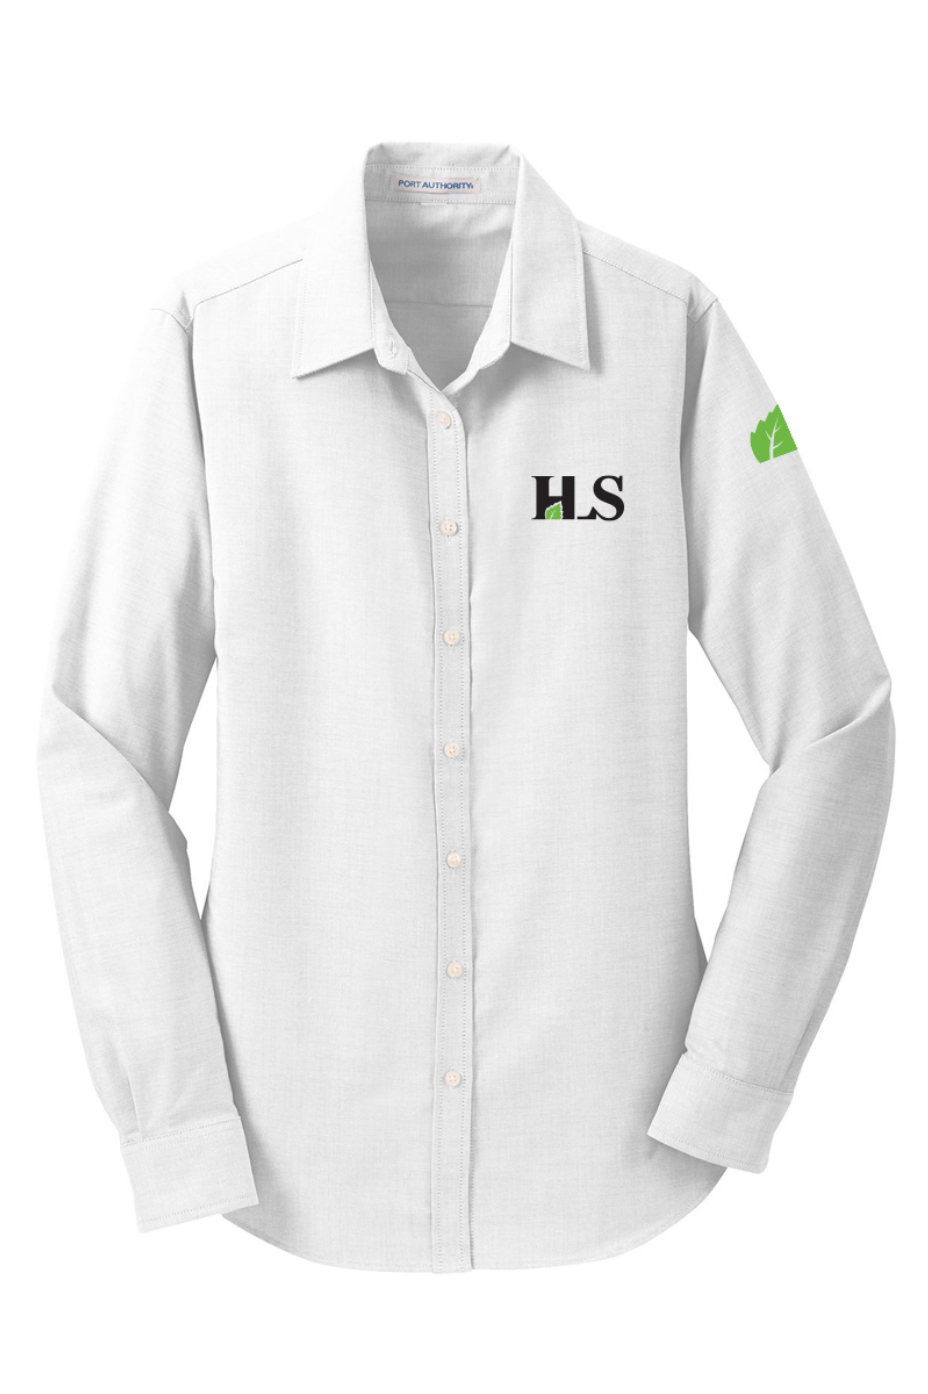 HLS Ladies Port Authority SuperPro Oxford Shirt - L658